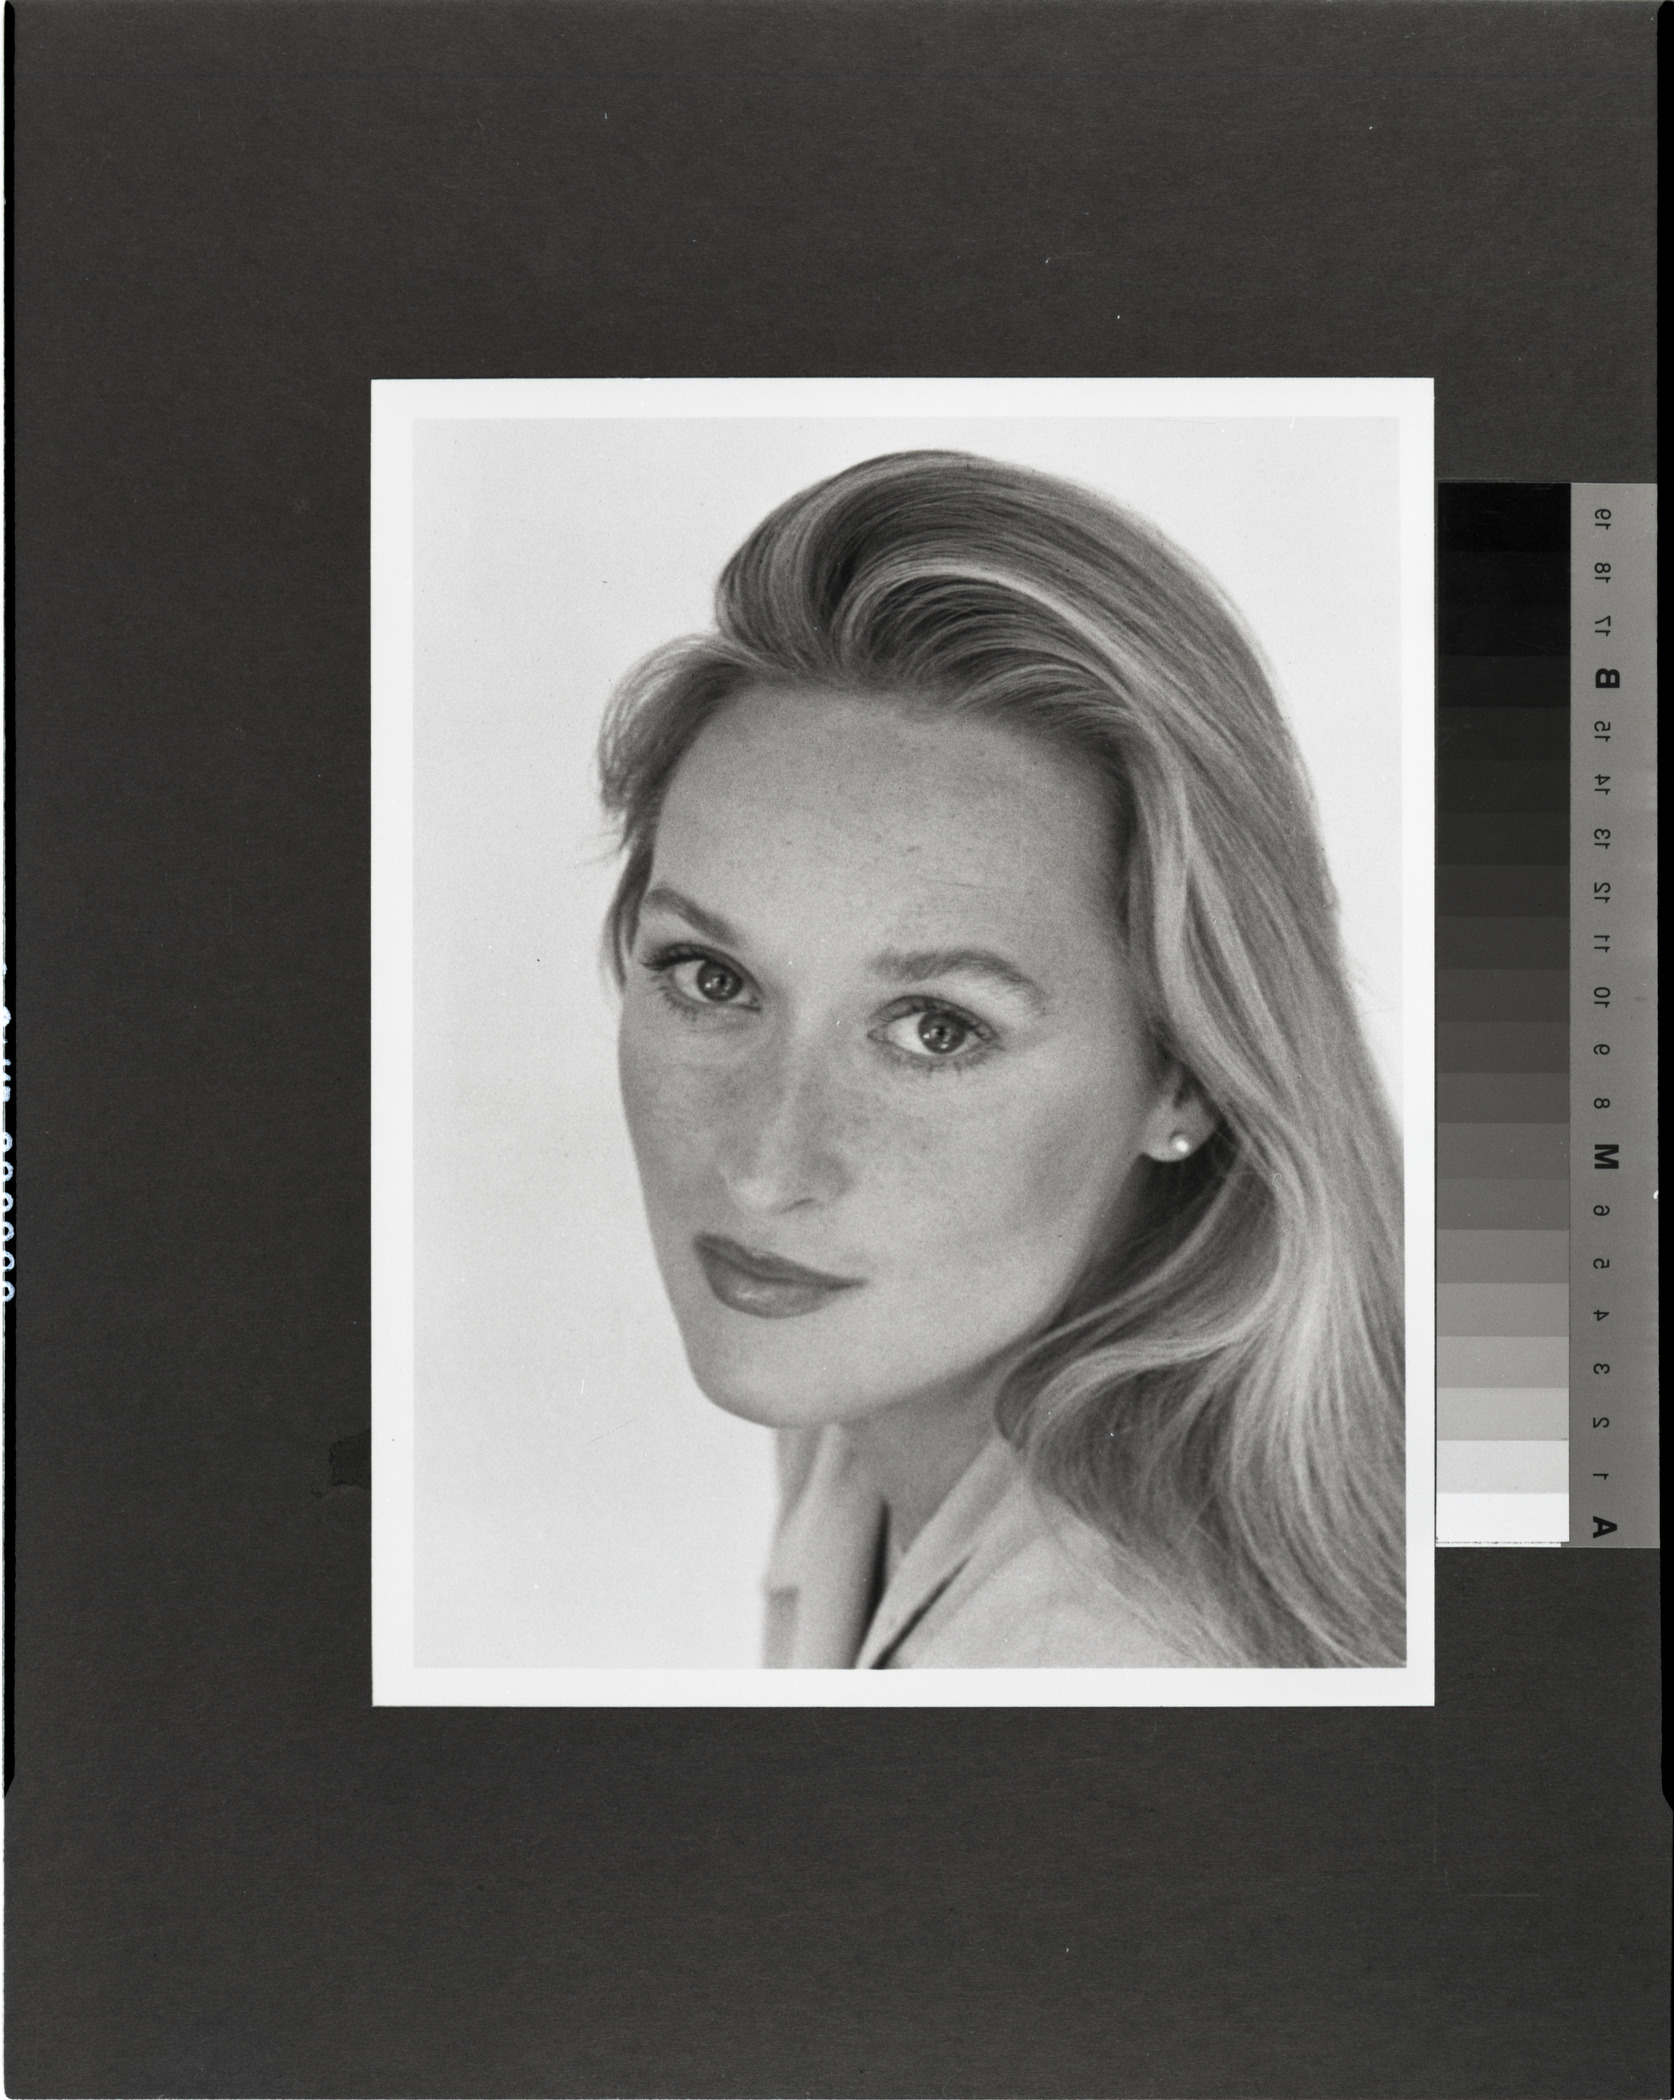 A black-and-white headshot of Meryl Streep